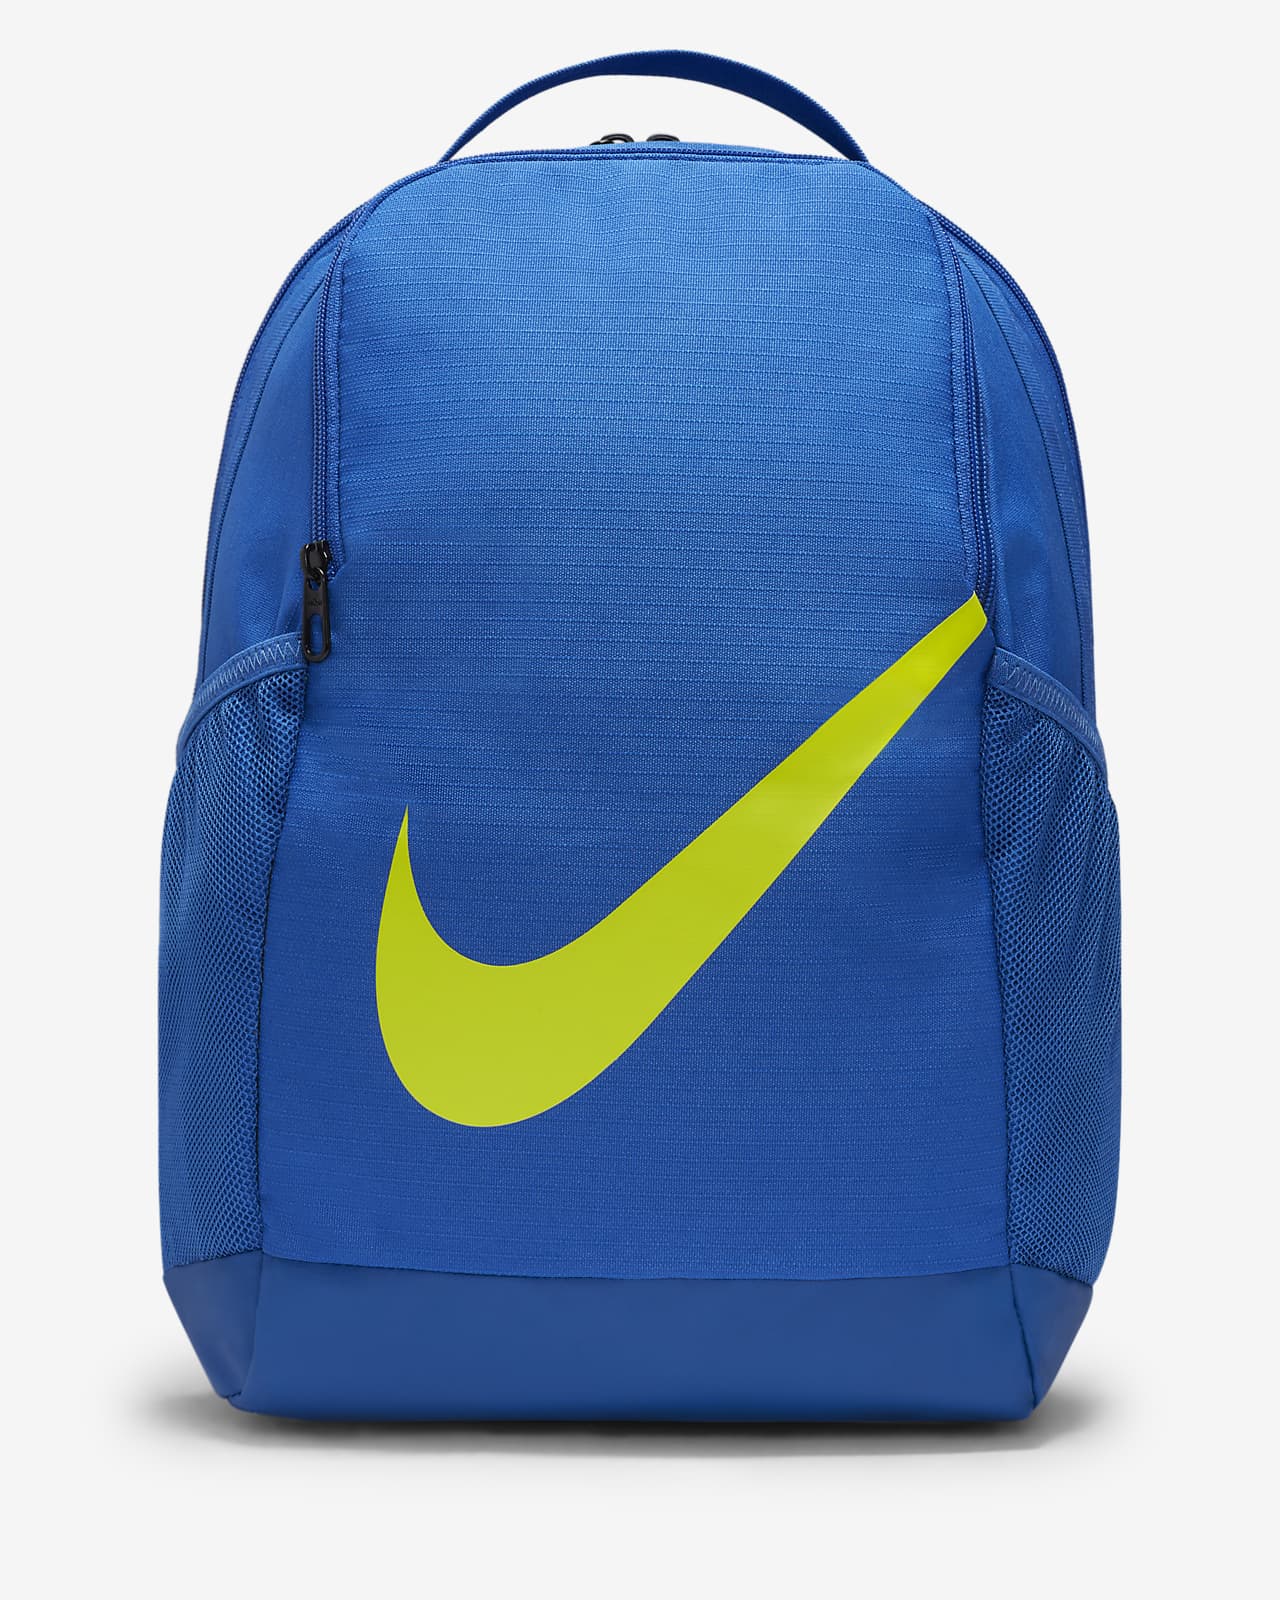 Nike Kids' Brasilia JDI Backpack Game Royal / Game Royal - Atomic